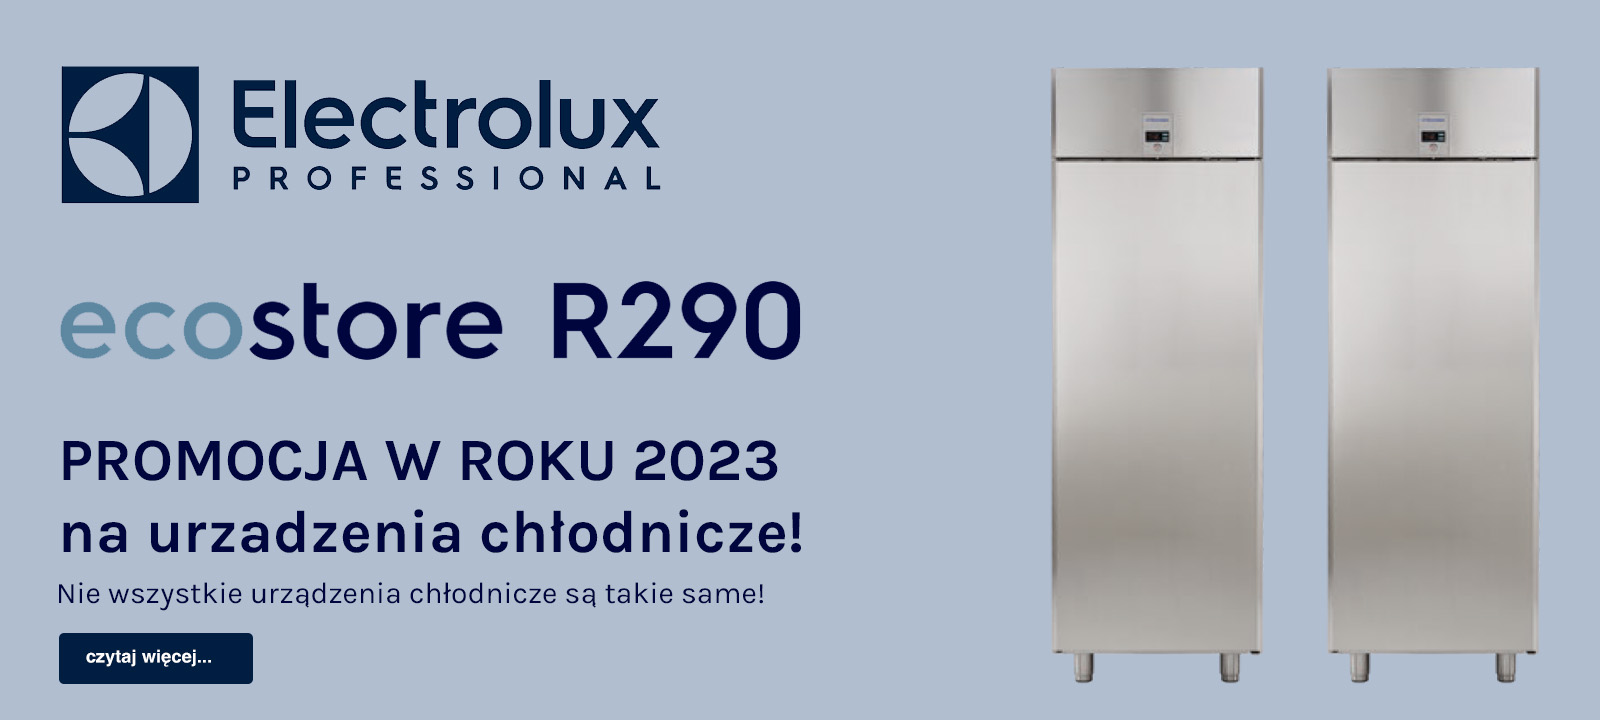 PROMOCJA 2023 - na urządzenia chłodnicze od Electrolux Professional